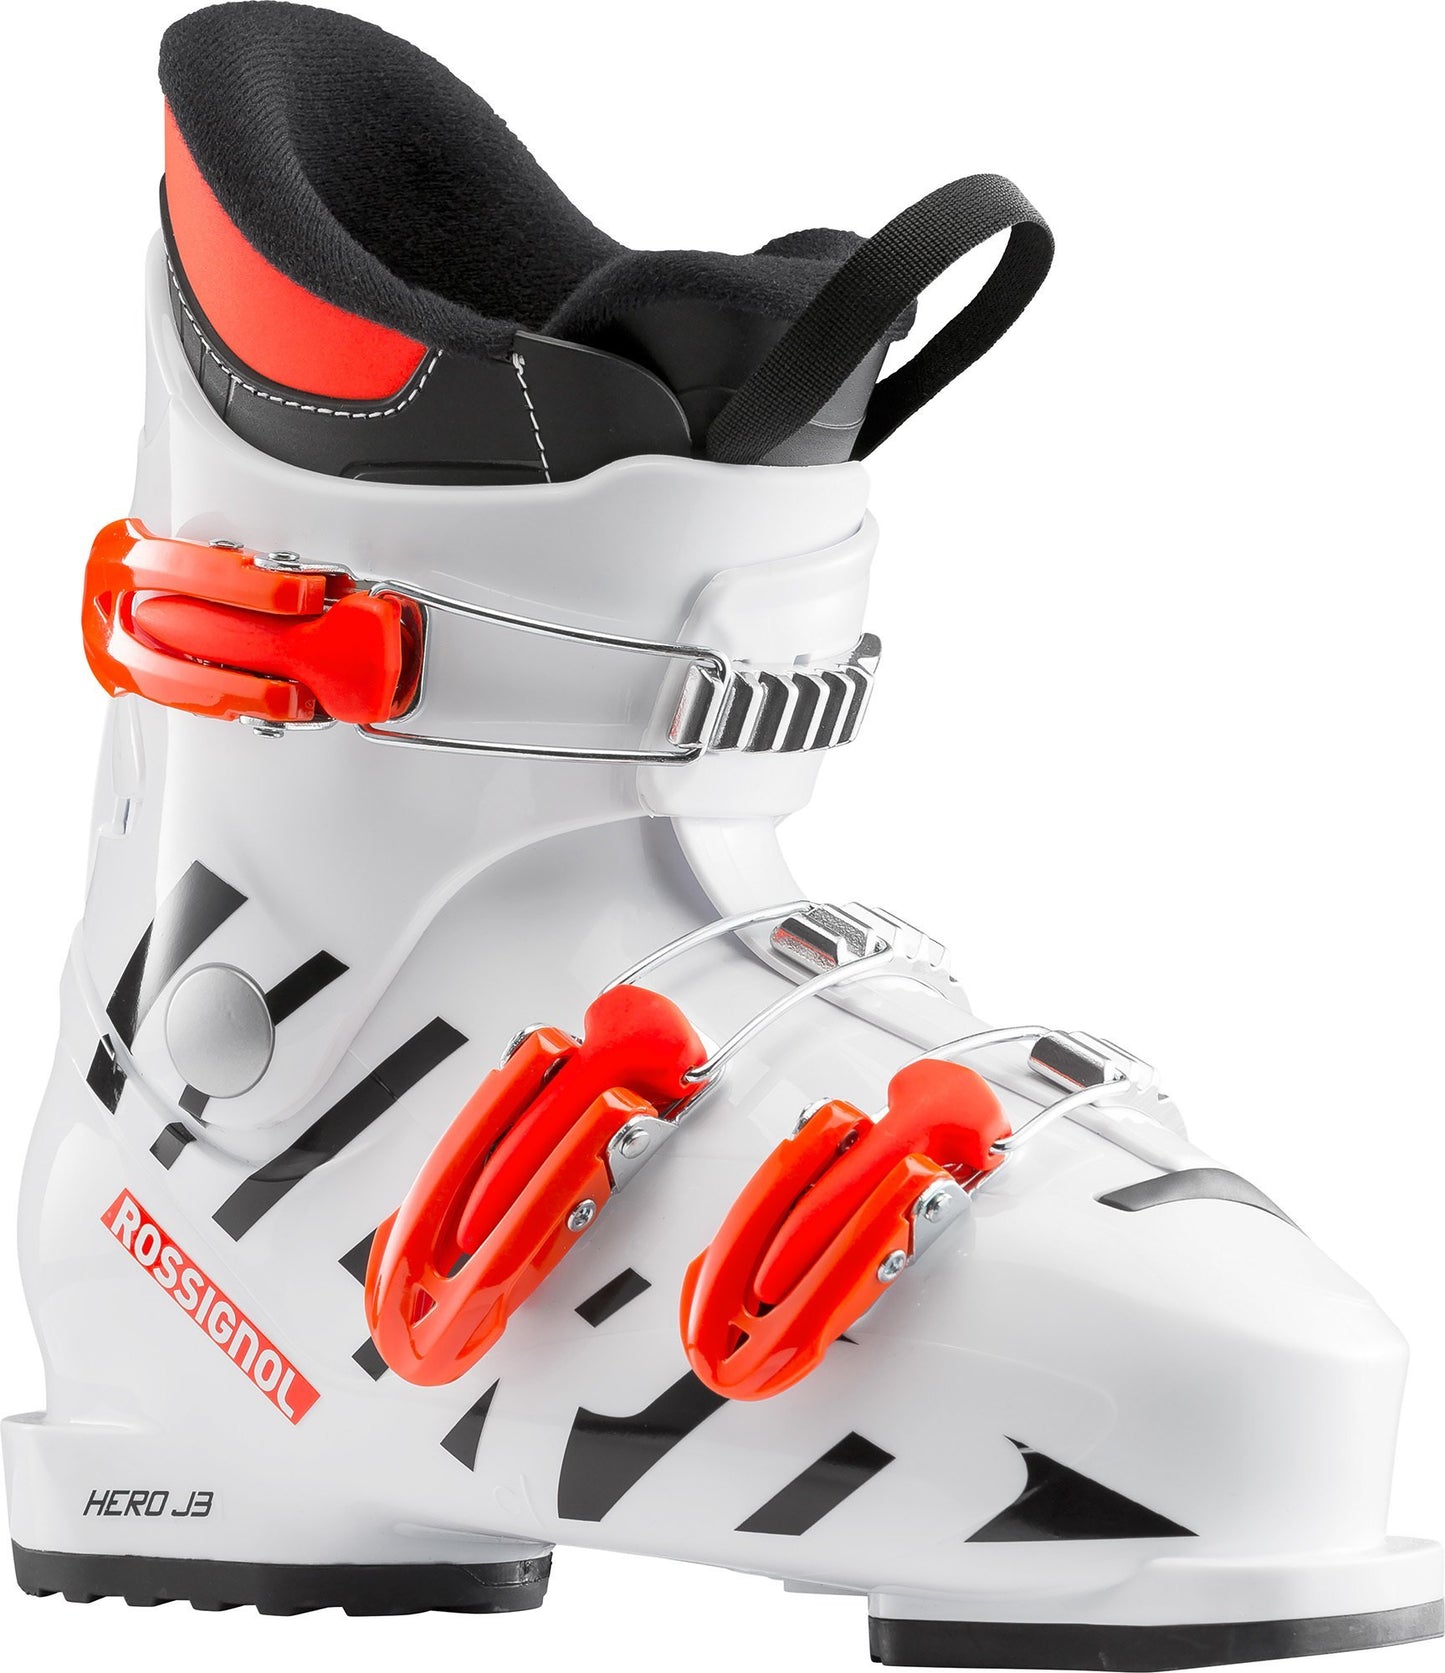 Rossignol Hero J3 Junior Ski Boot 2019